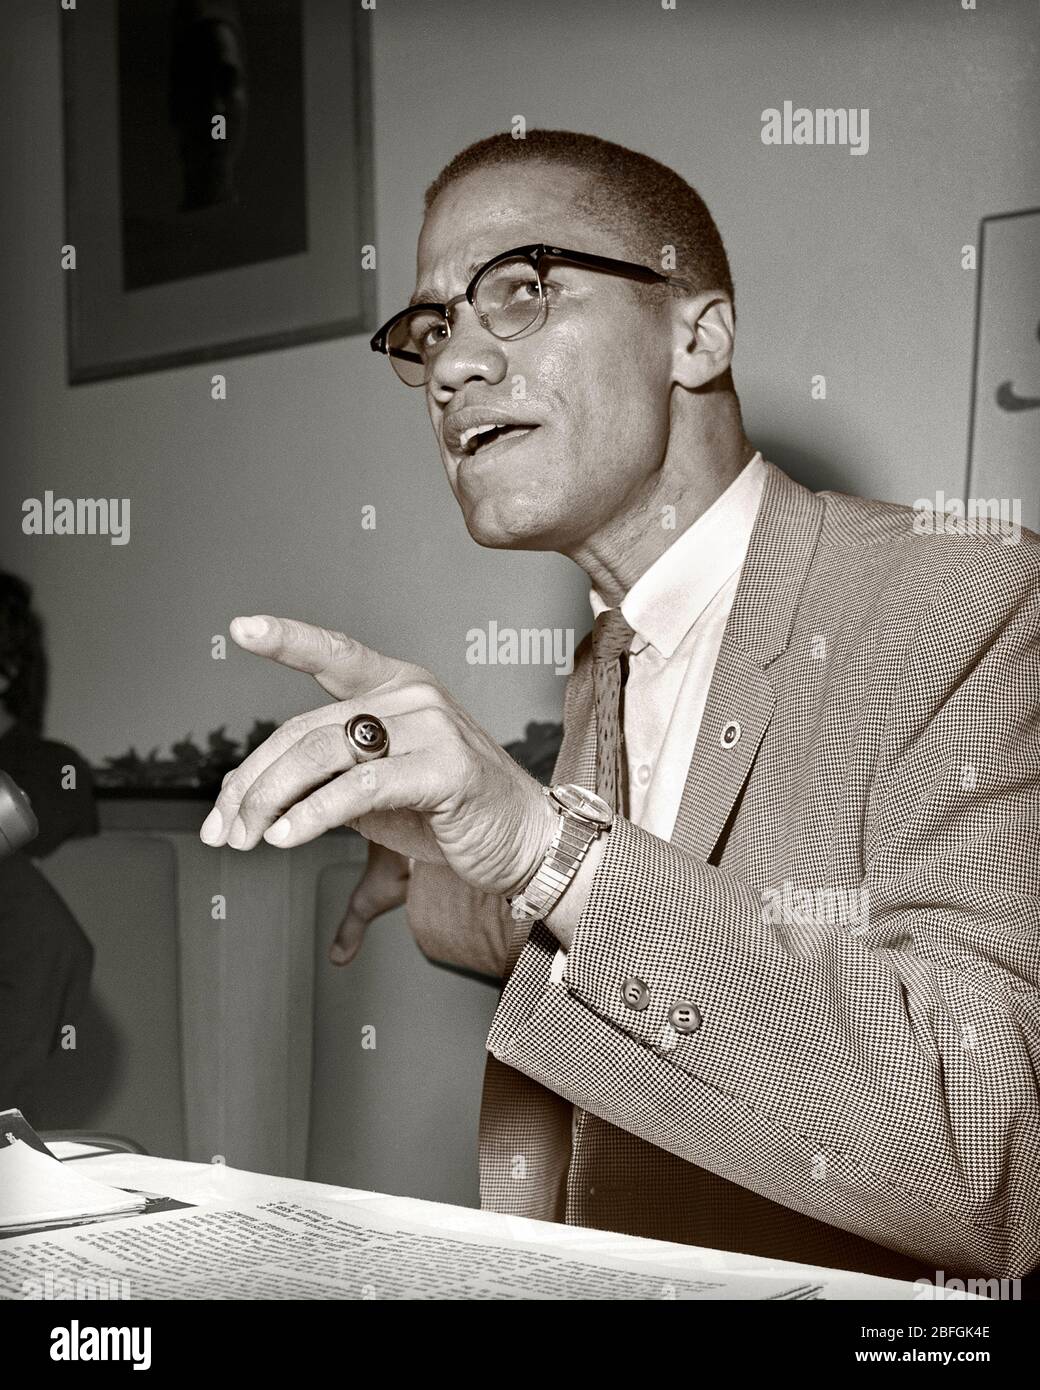 Malcolm X in Chicago, Illinois. Mai 1961. Nation des Islam und Black Muslim Führer. Bild getönt von 2.25 x 2.25 Zoll S/W-Negativ. Stockfoto